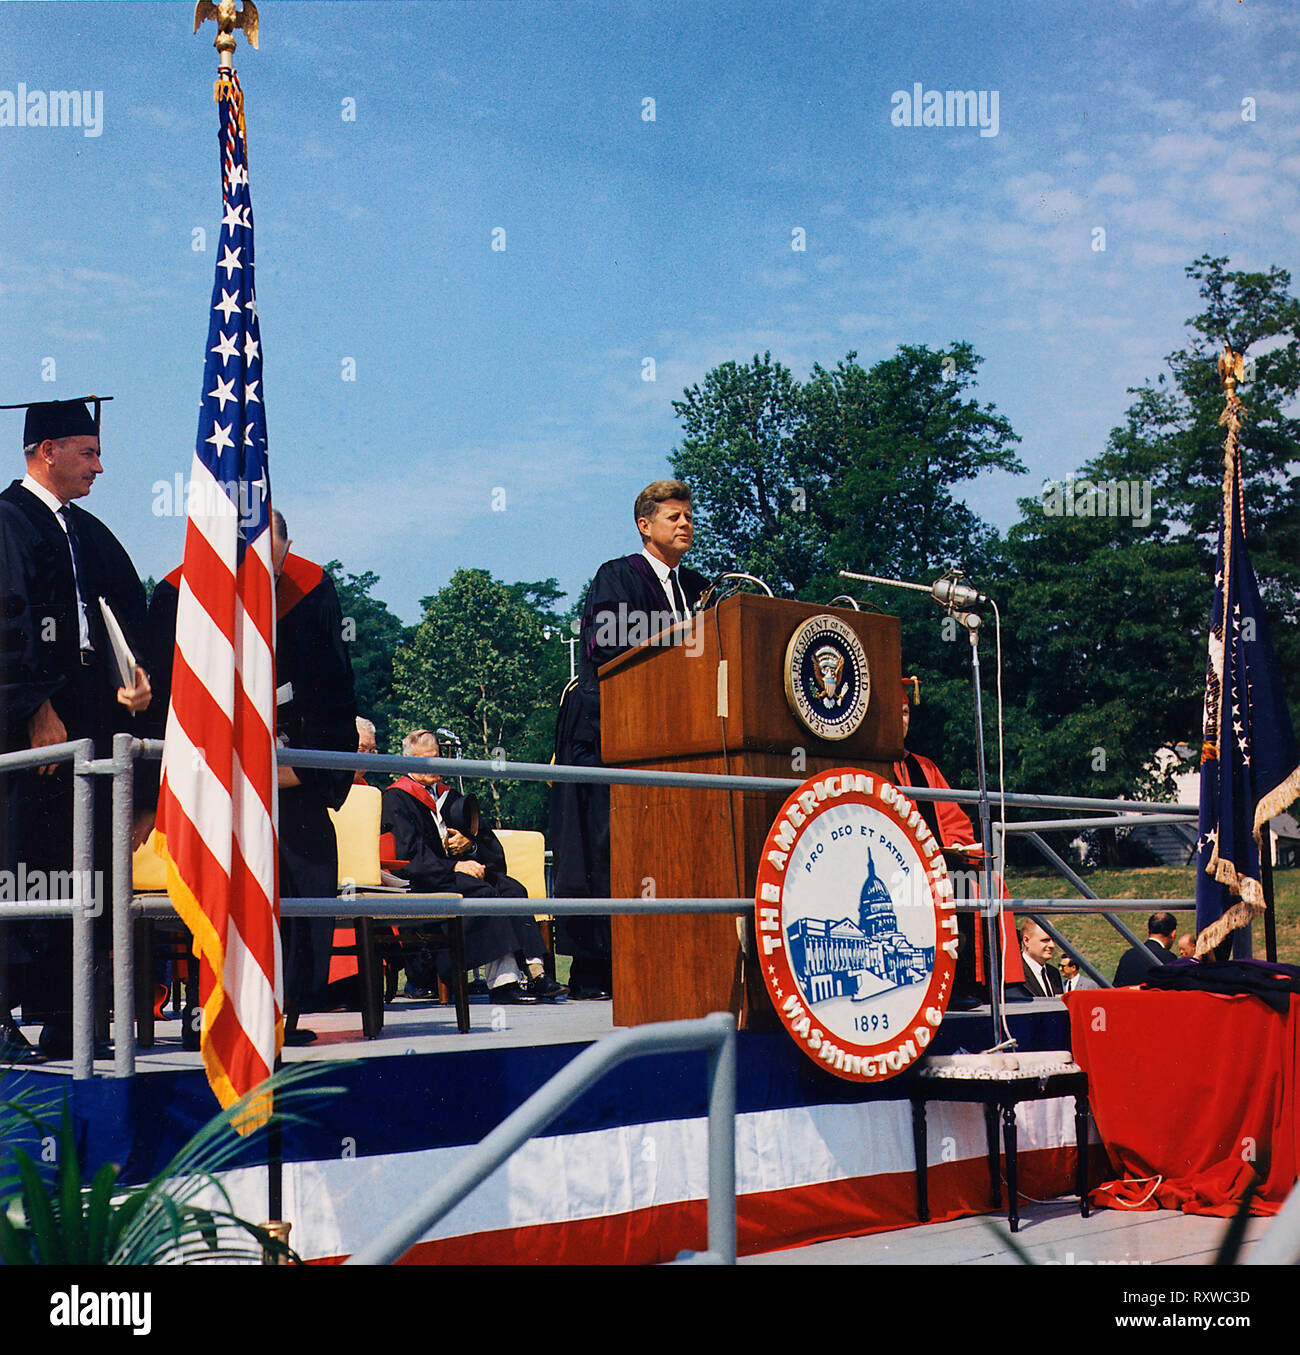 Le président John F Kennedy lors d e l'adresse de début de l'American University. Washington, D. C., American University, John M. Reeves Terrain de sport. Juin 1963 Banque D'Images